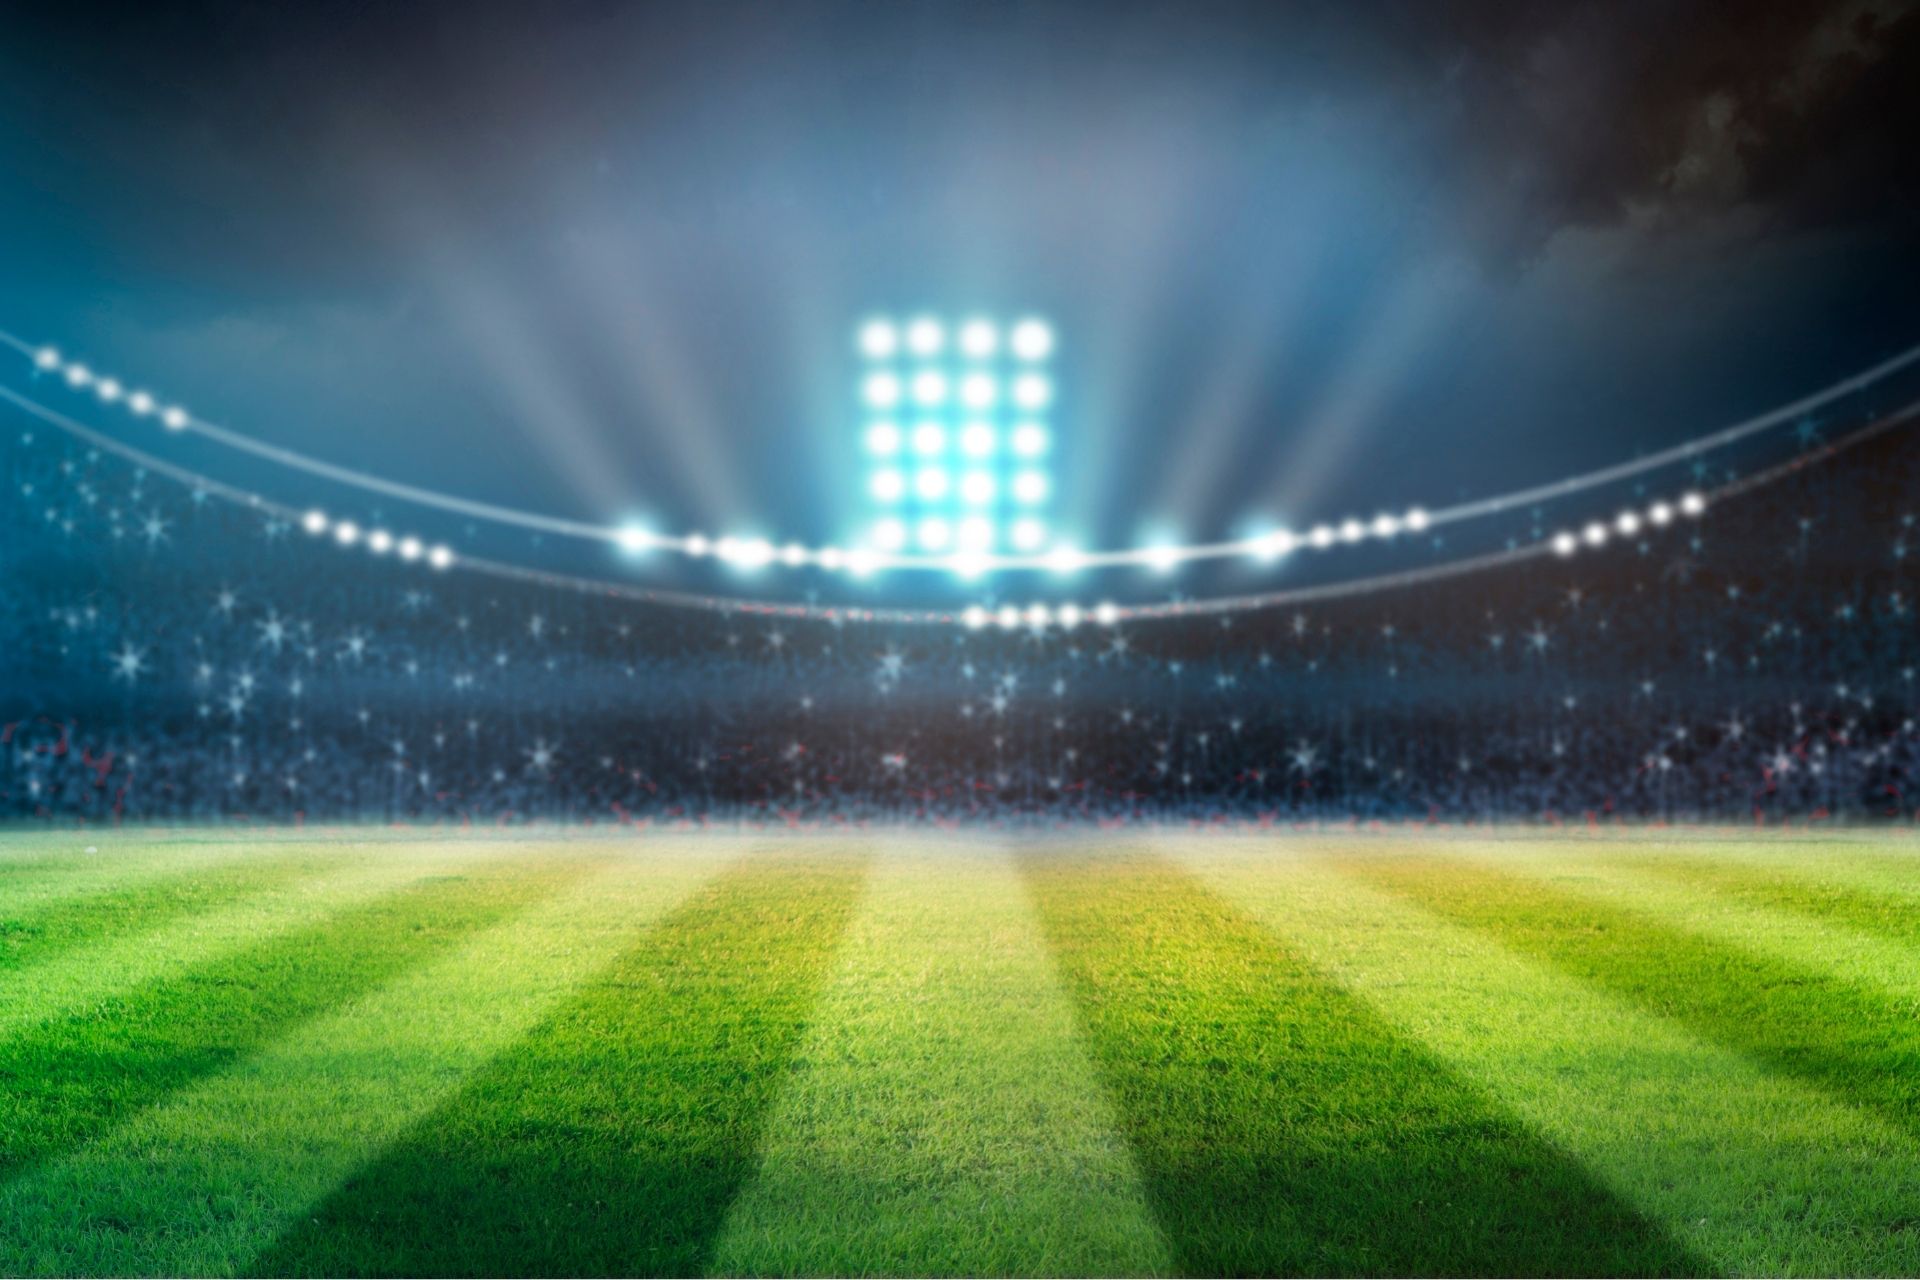 Na stadionie Stadio Comunale Via del Mare dnia 2022-10-02 13:00 miał miejsce mecz Lecce vs Cremonese zakończony wynikiem 1-1